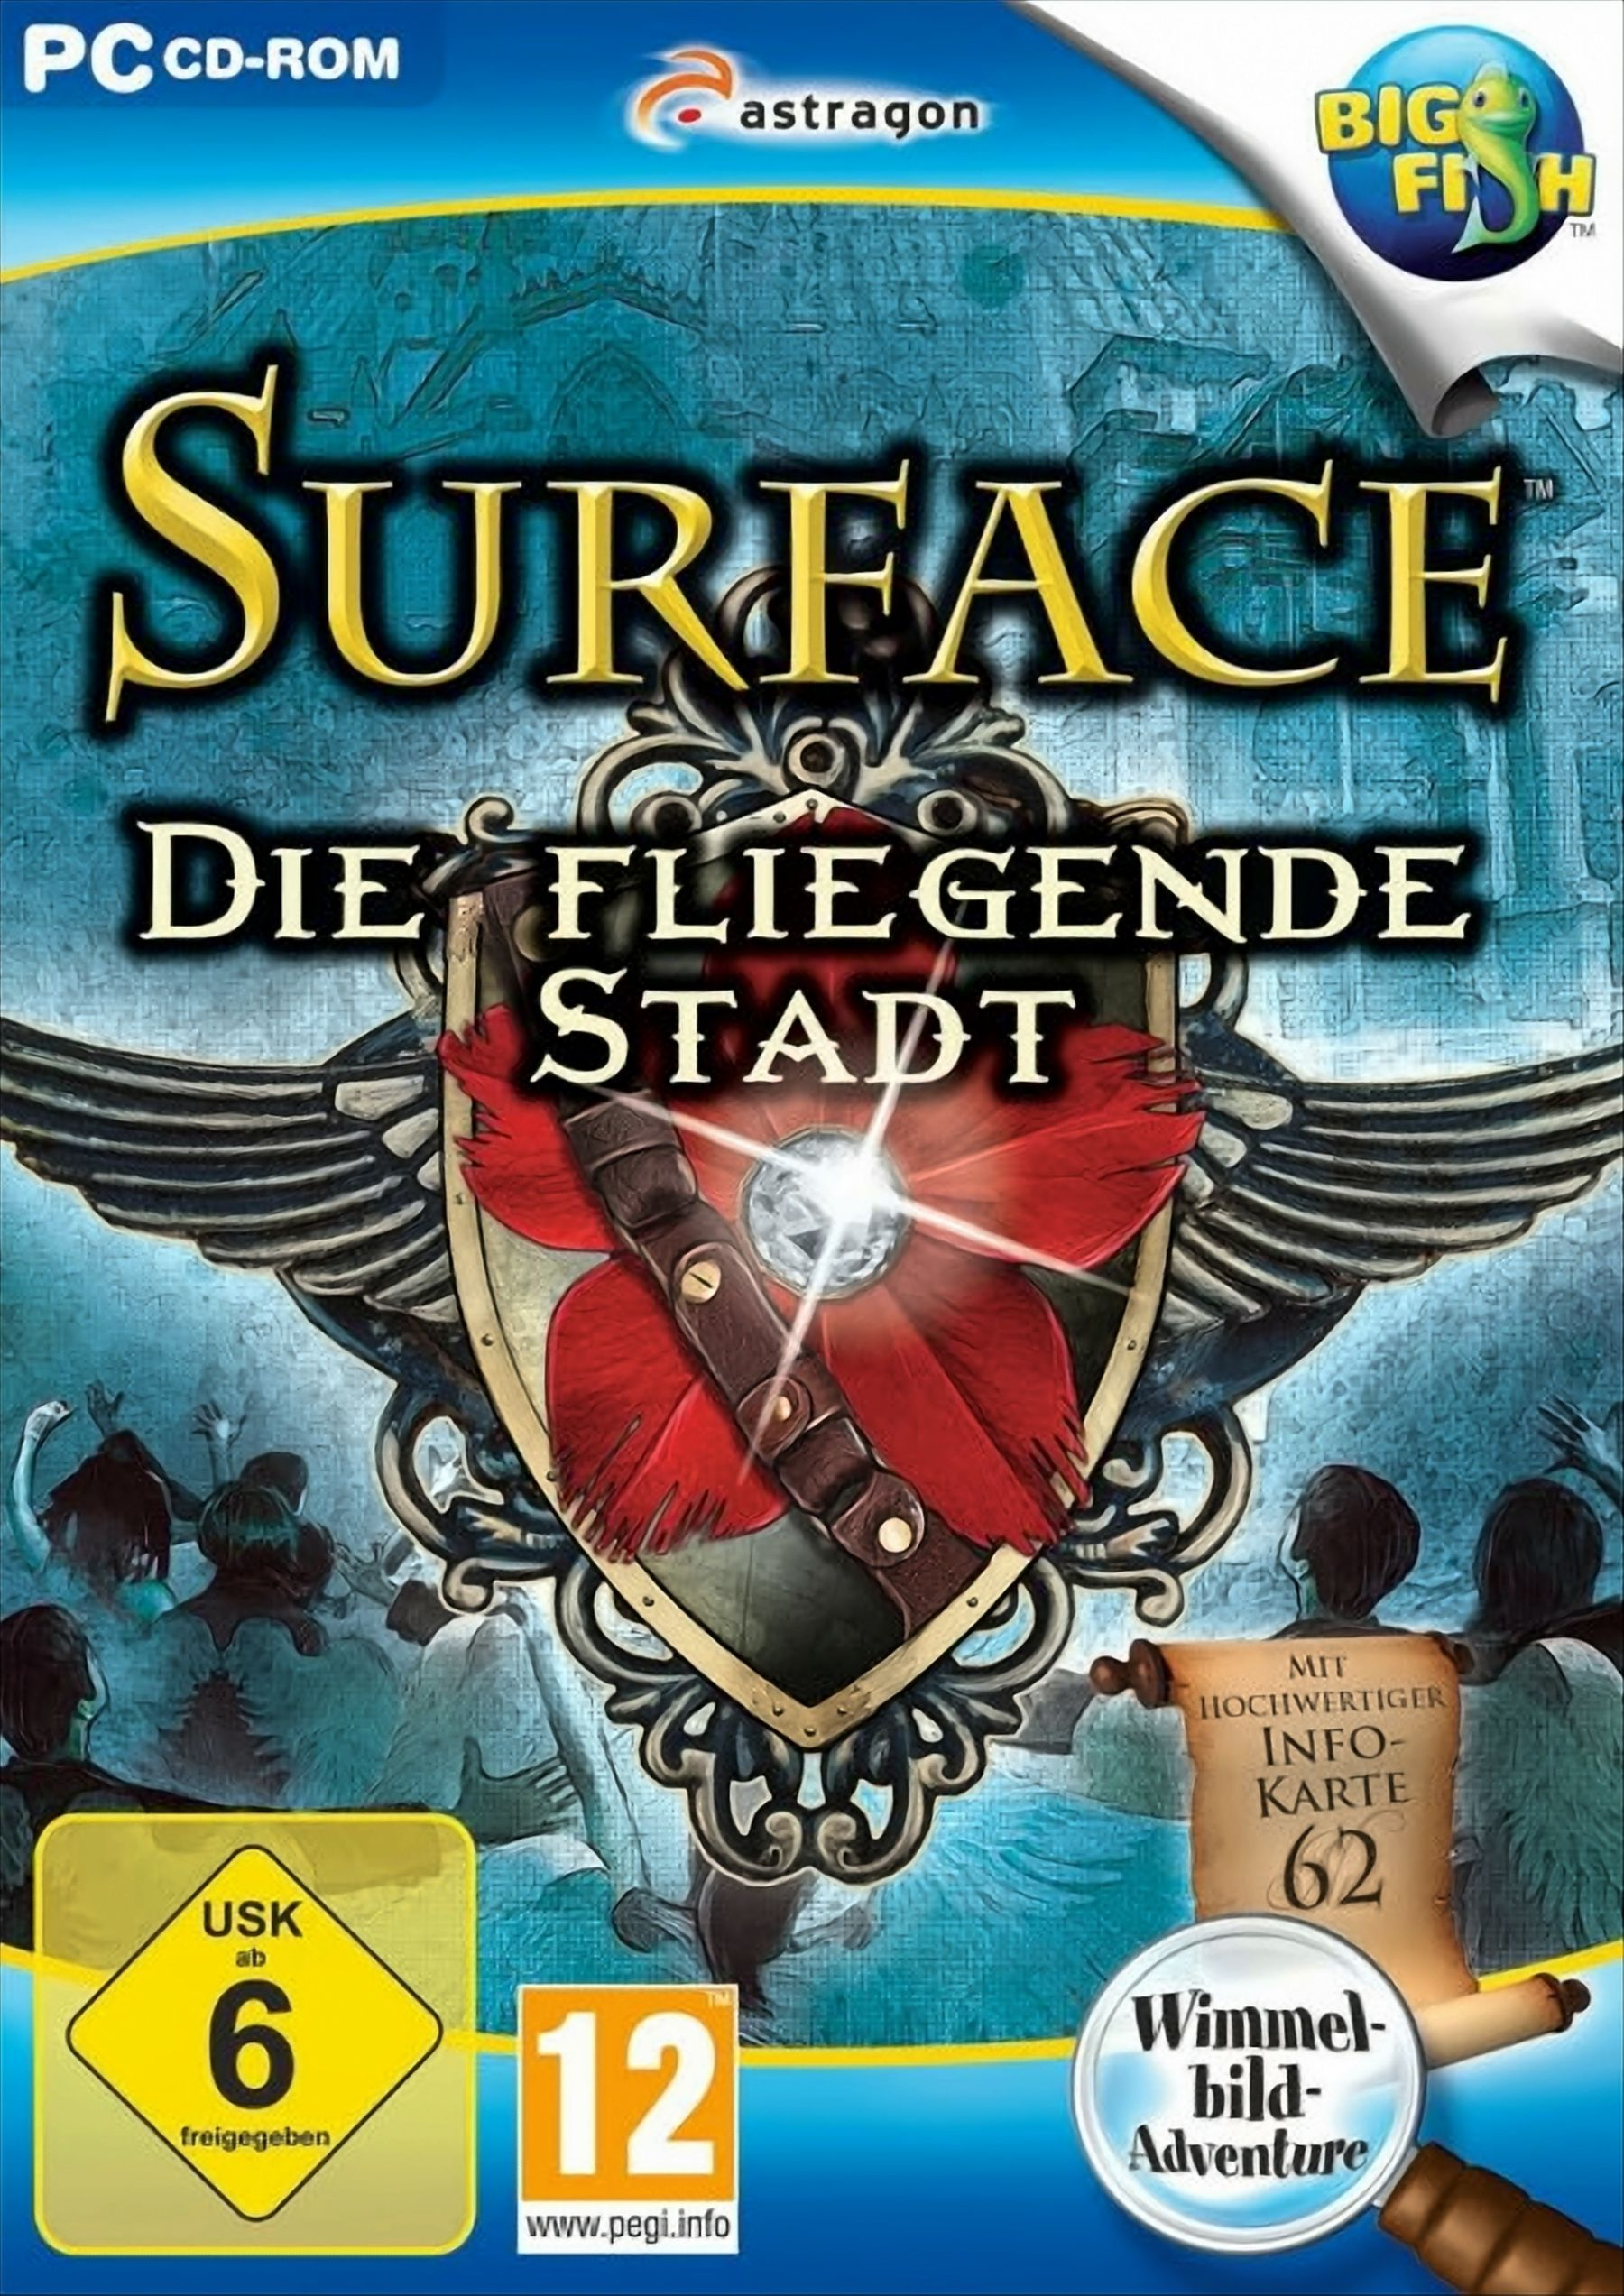 [PC] Surface: Stadt Die fliegende -